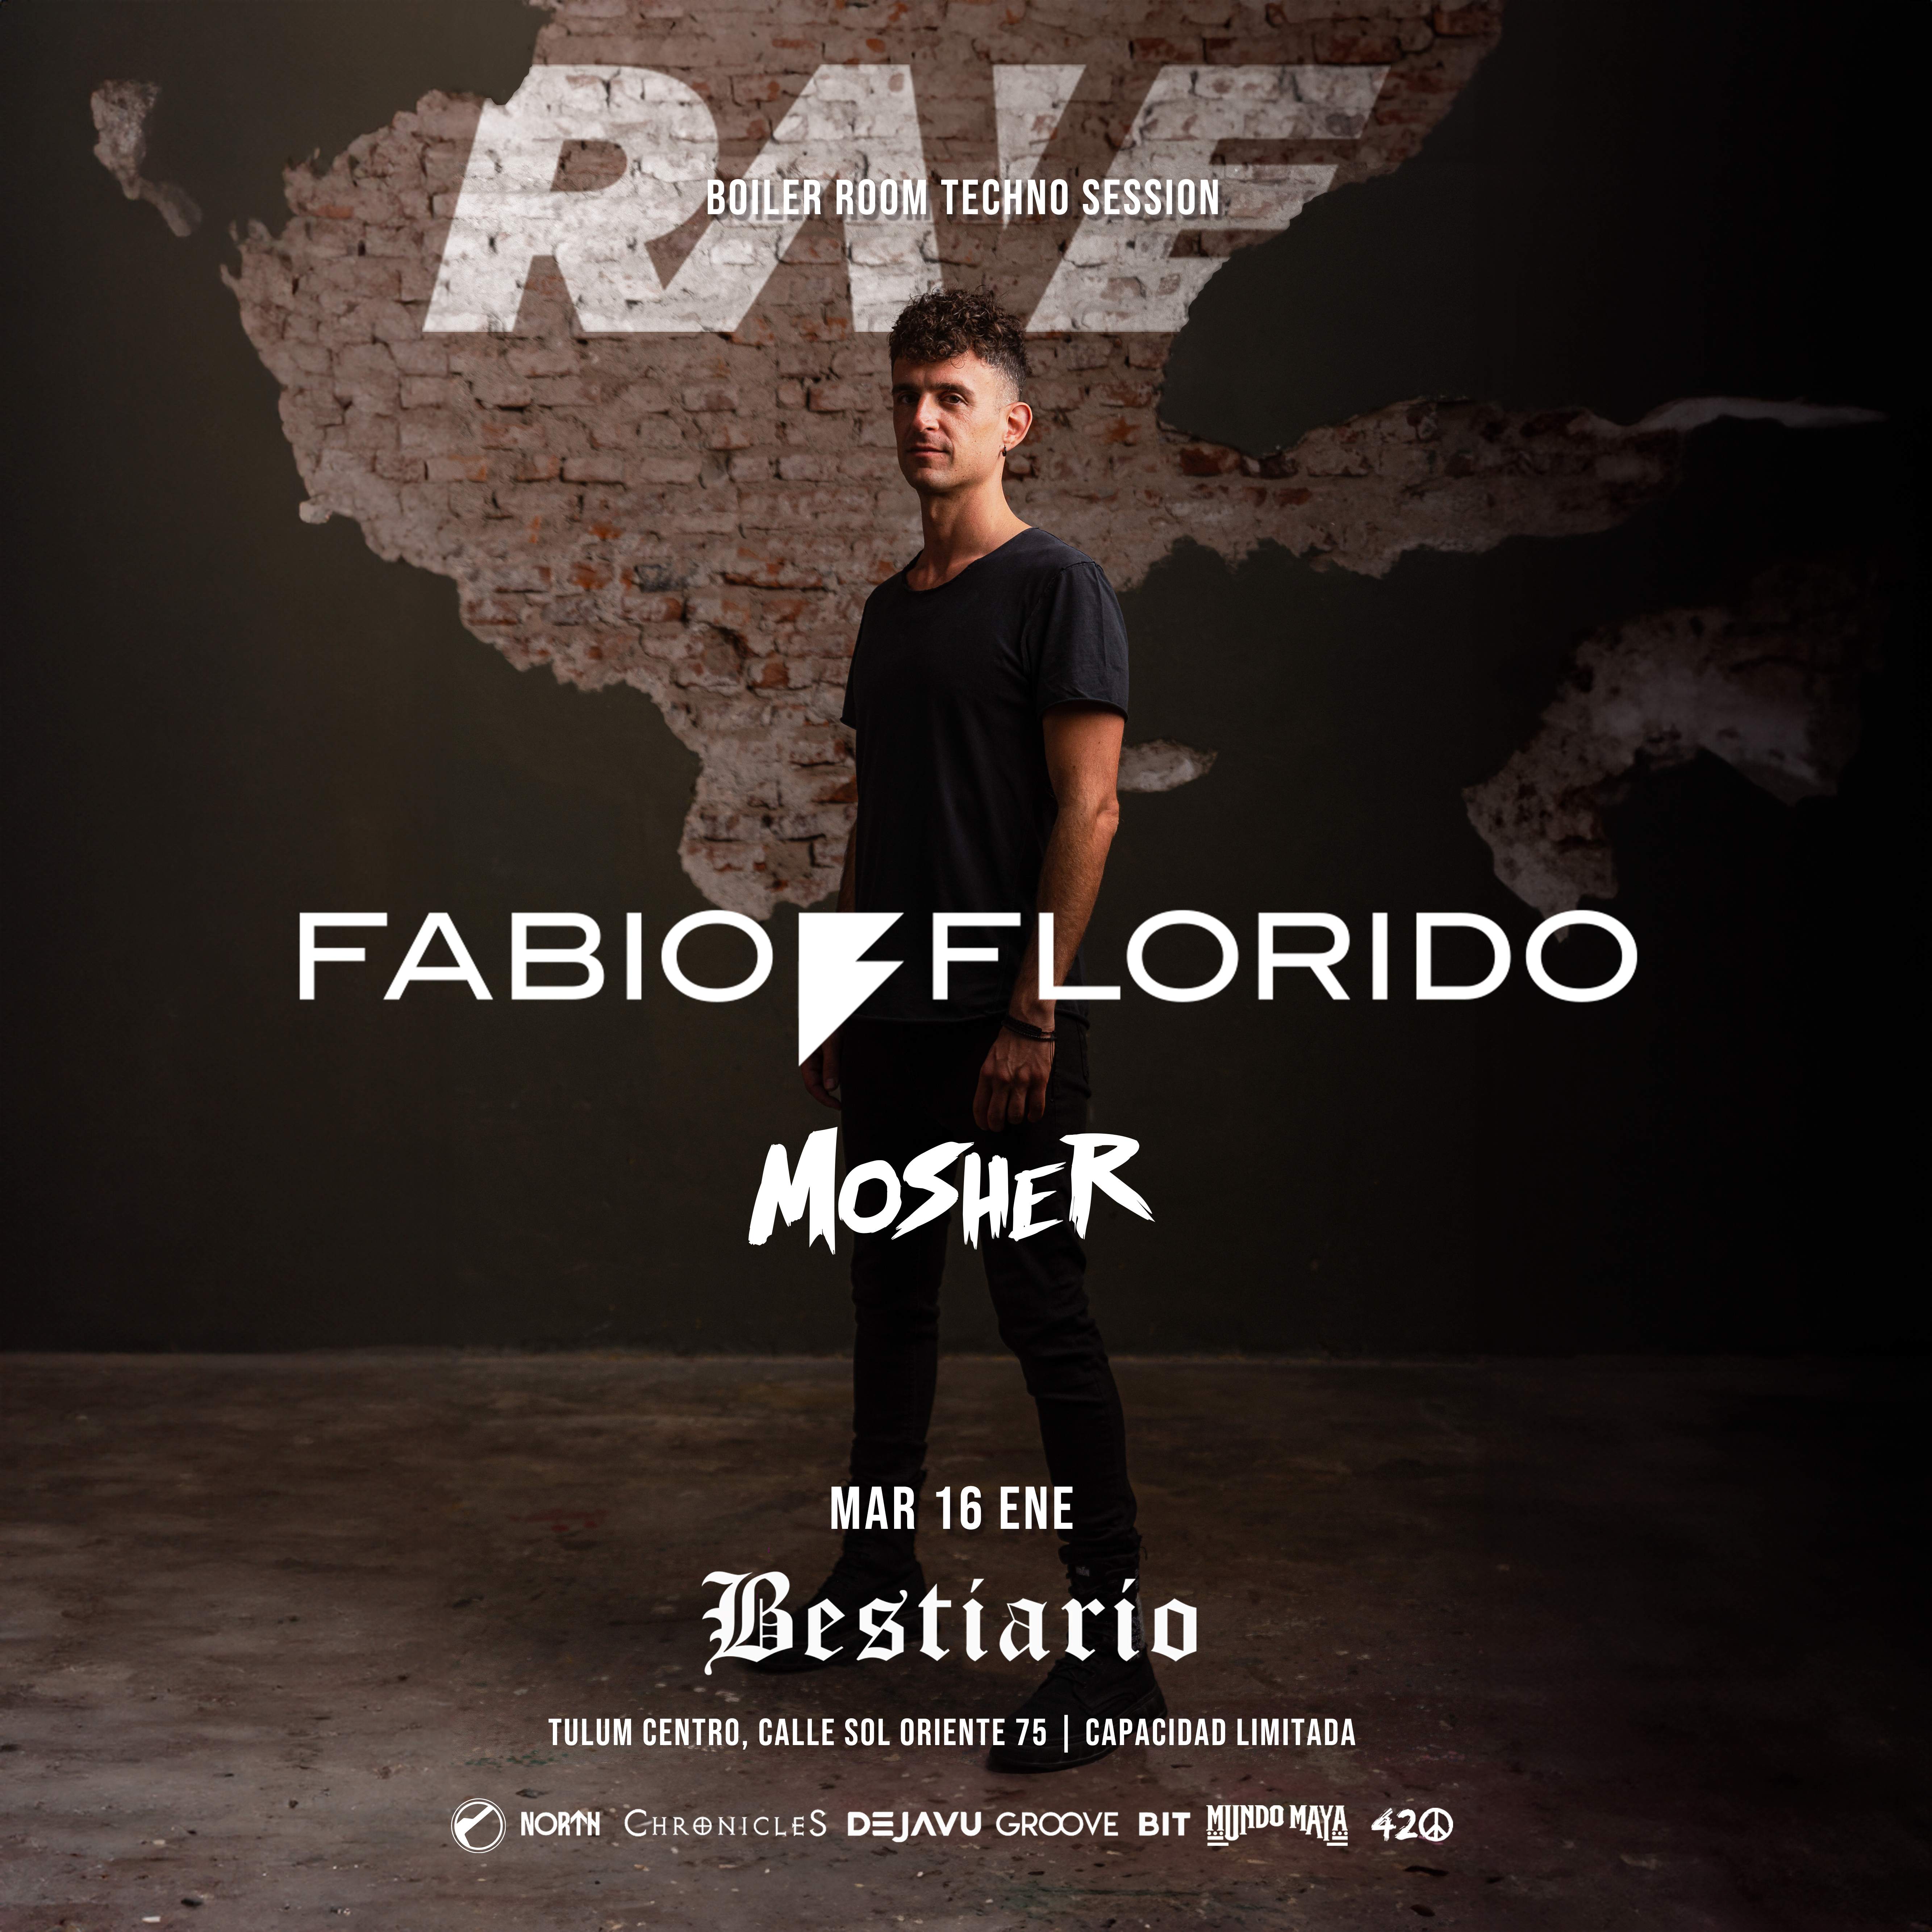 Rave - Fabio Florido I Boiler Room Techno Session - フライヤー表